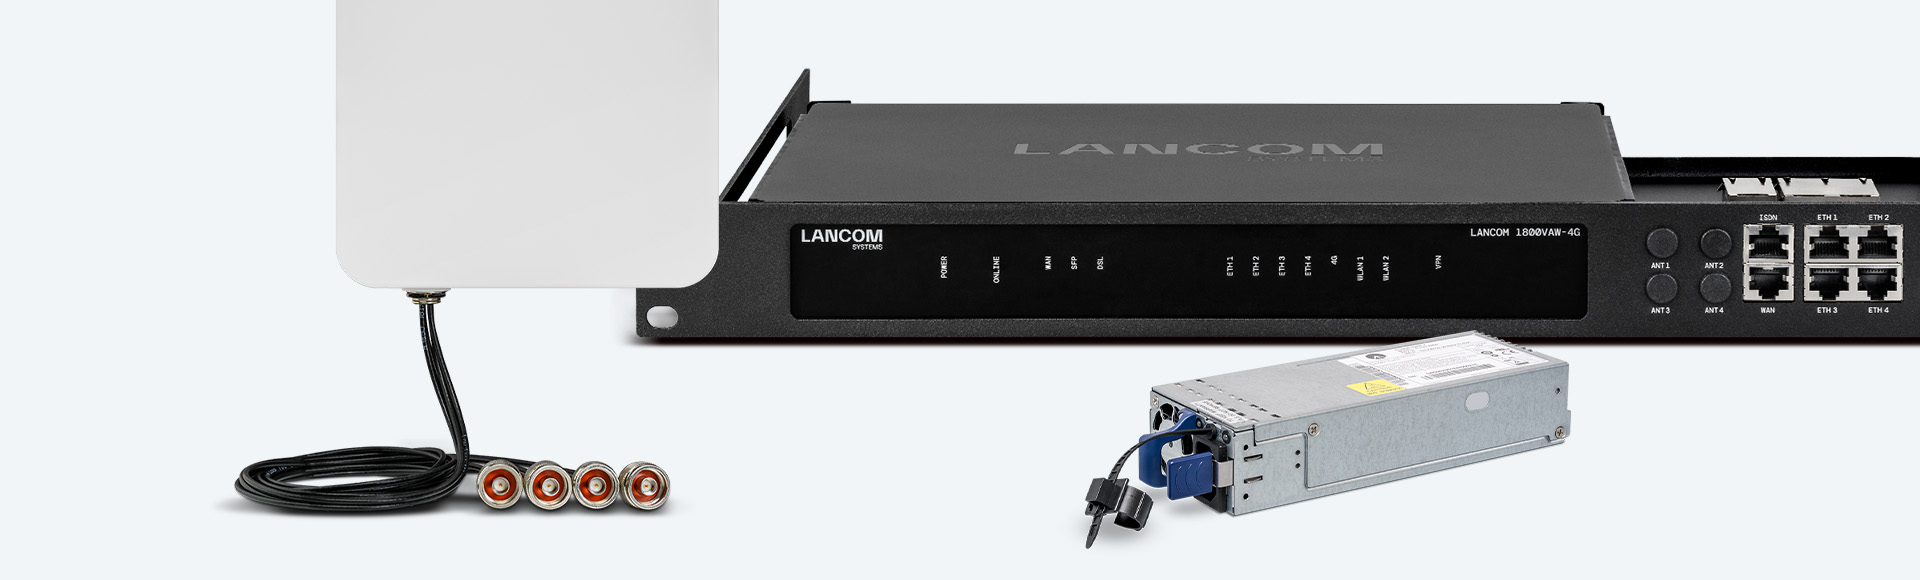 Collage of LANCOM Accessories Portfolio